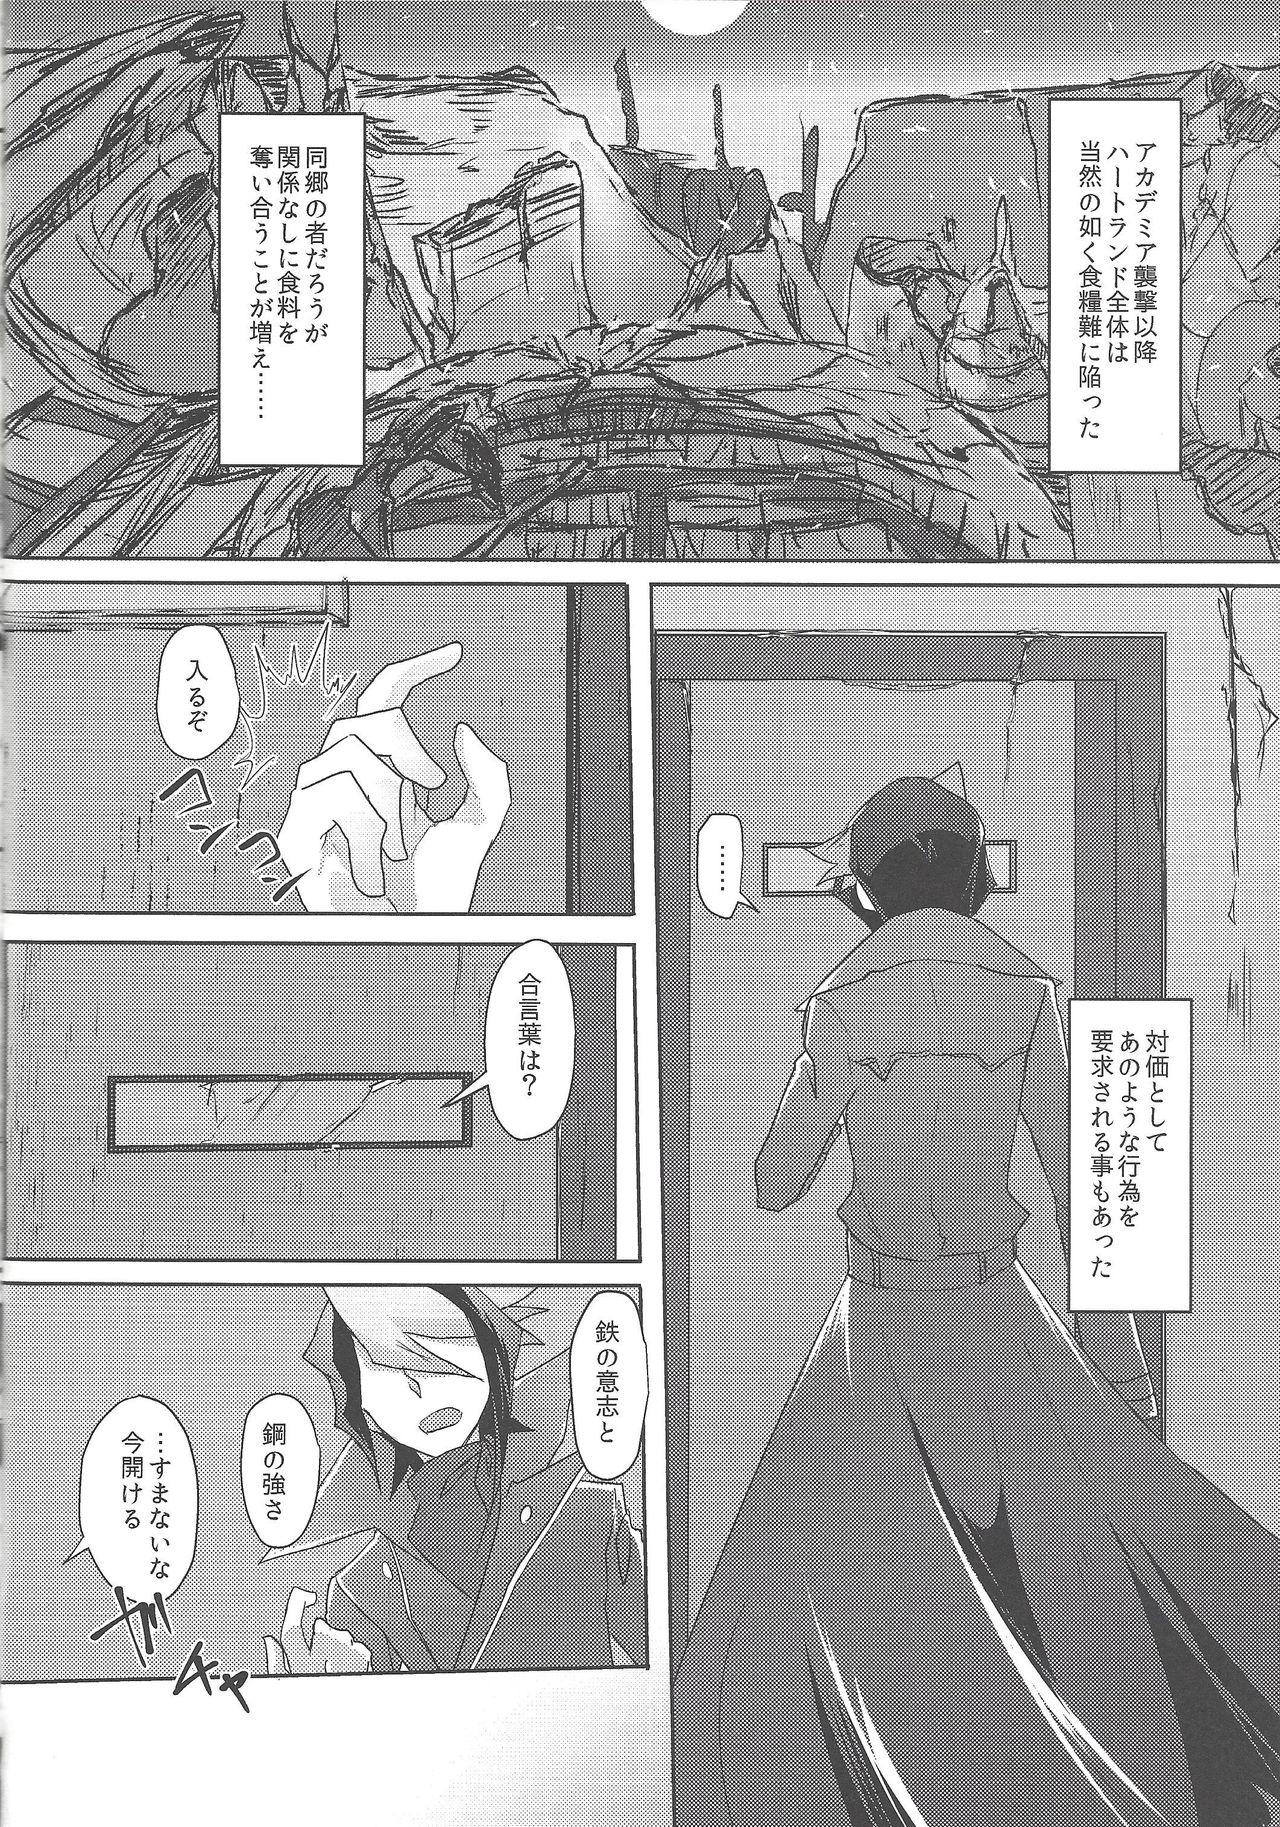 Boobs Kimi to kokoro no risōkyō - Yu gi oh arc v Pija - Page 5